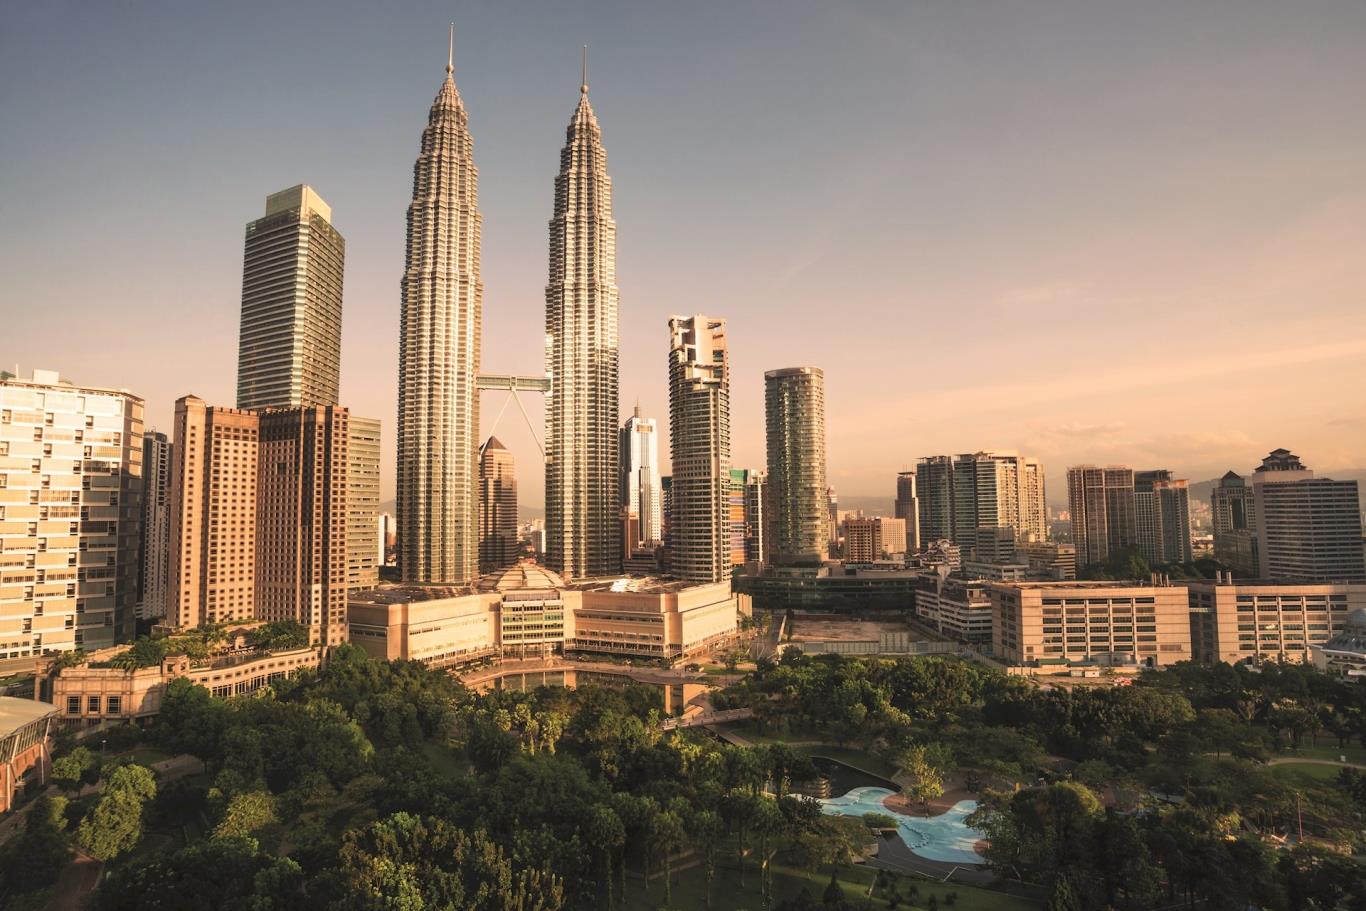 The famous landmarks in Kuala Lumpur, Malaysia